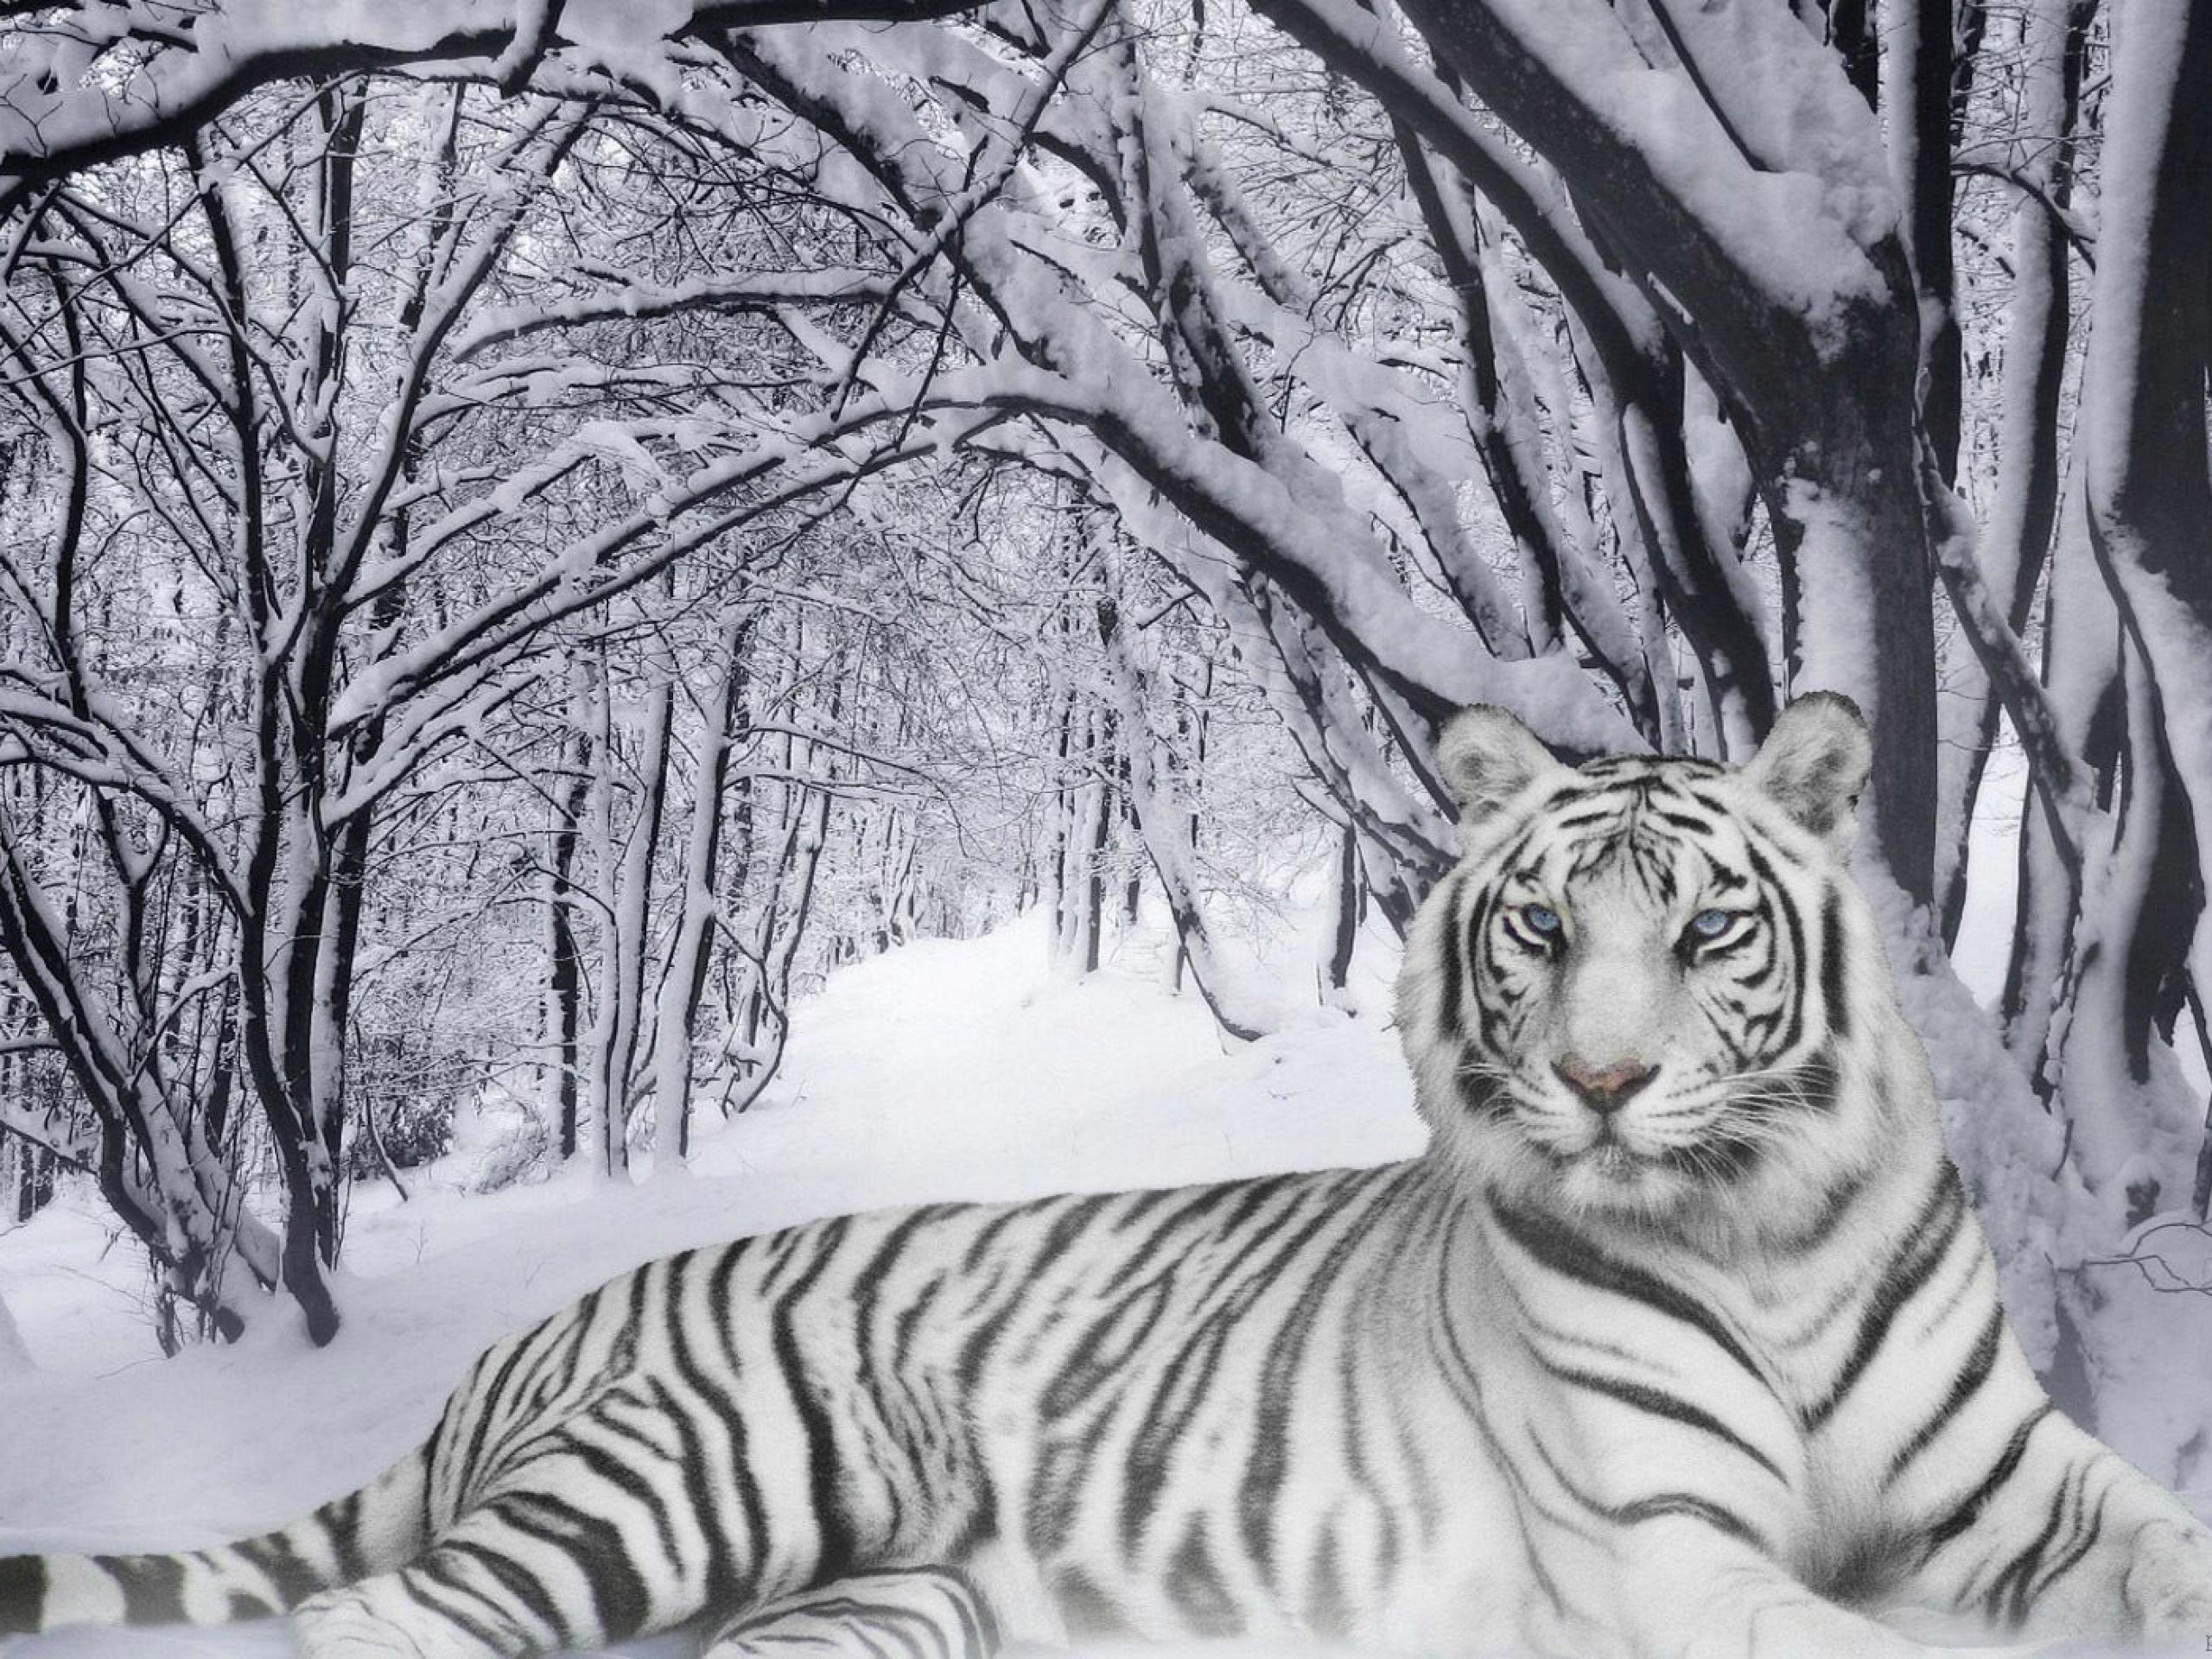 white tiger wallpaper